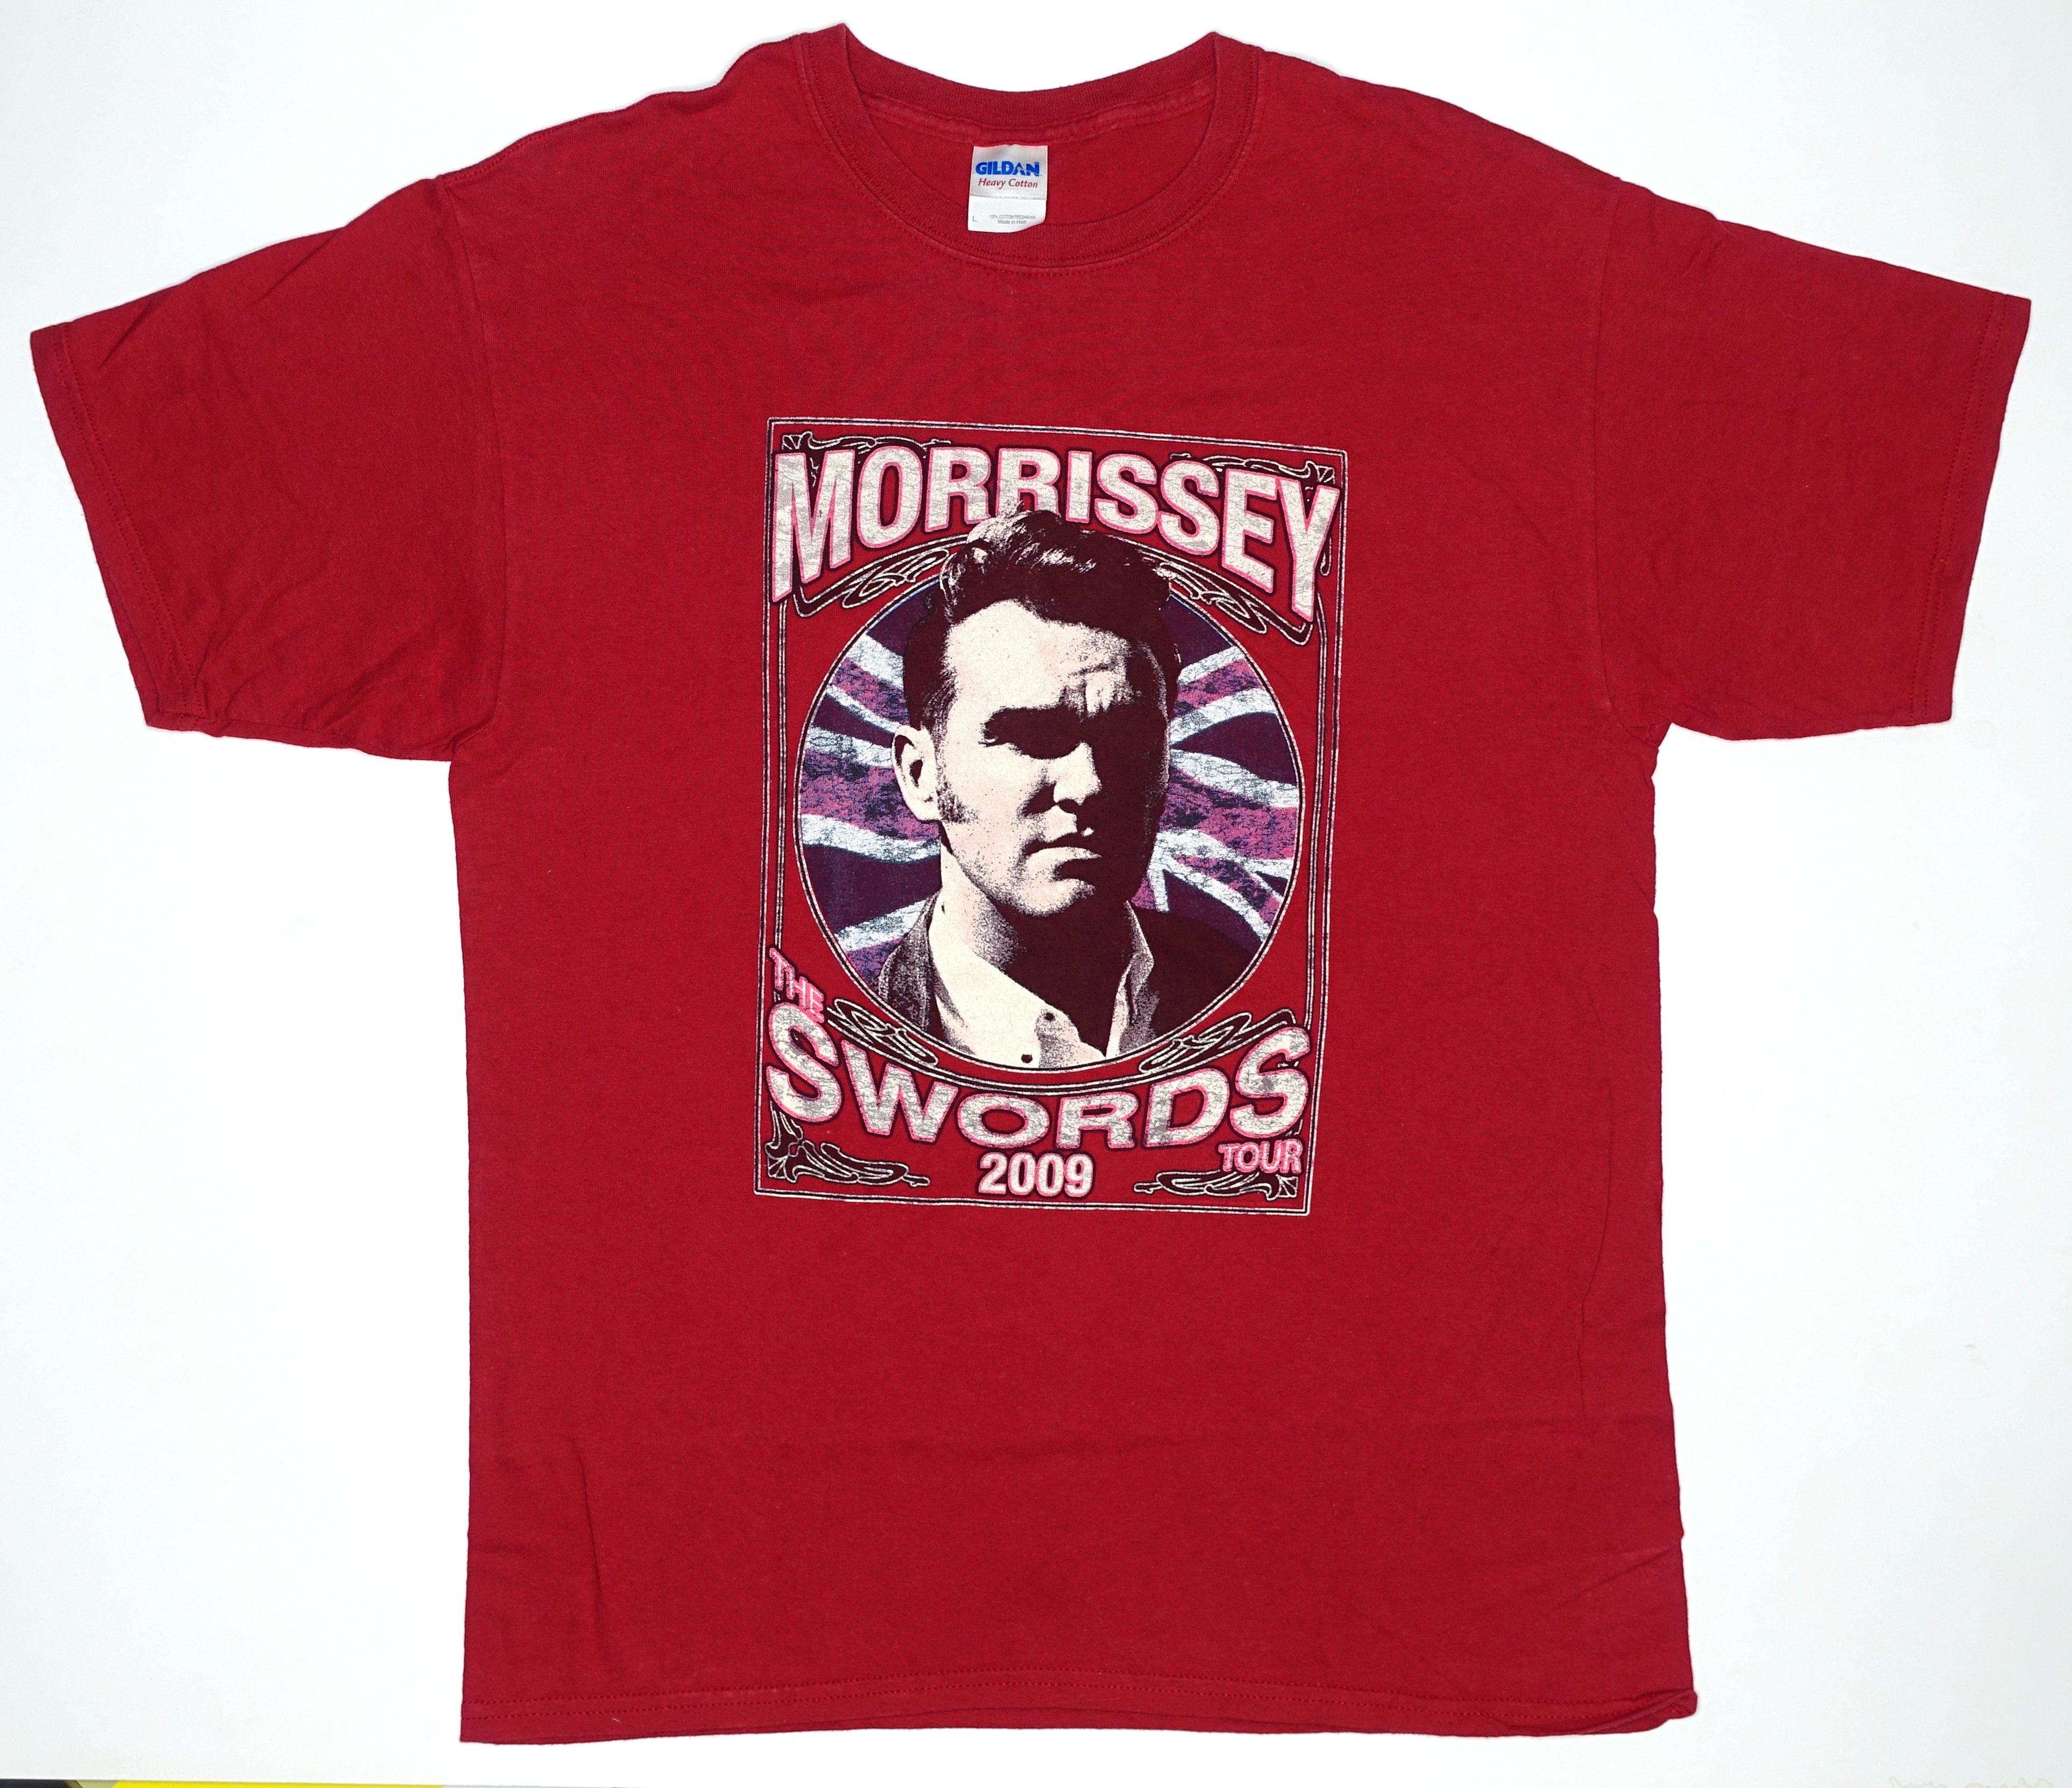 Morrissey - Swords Union Jack 2009 Tour Shirt Size Large